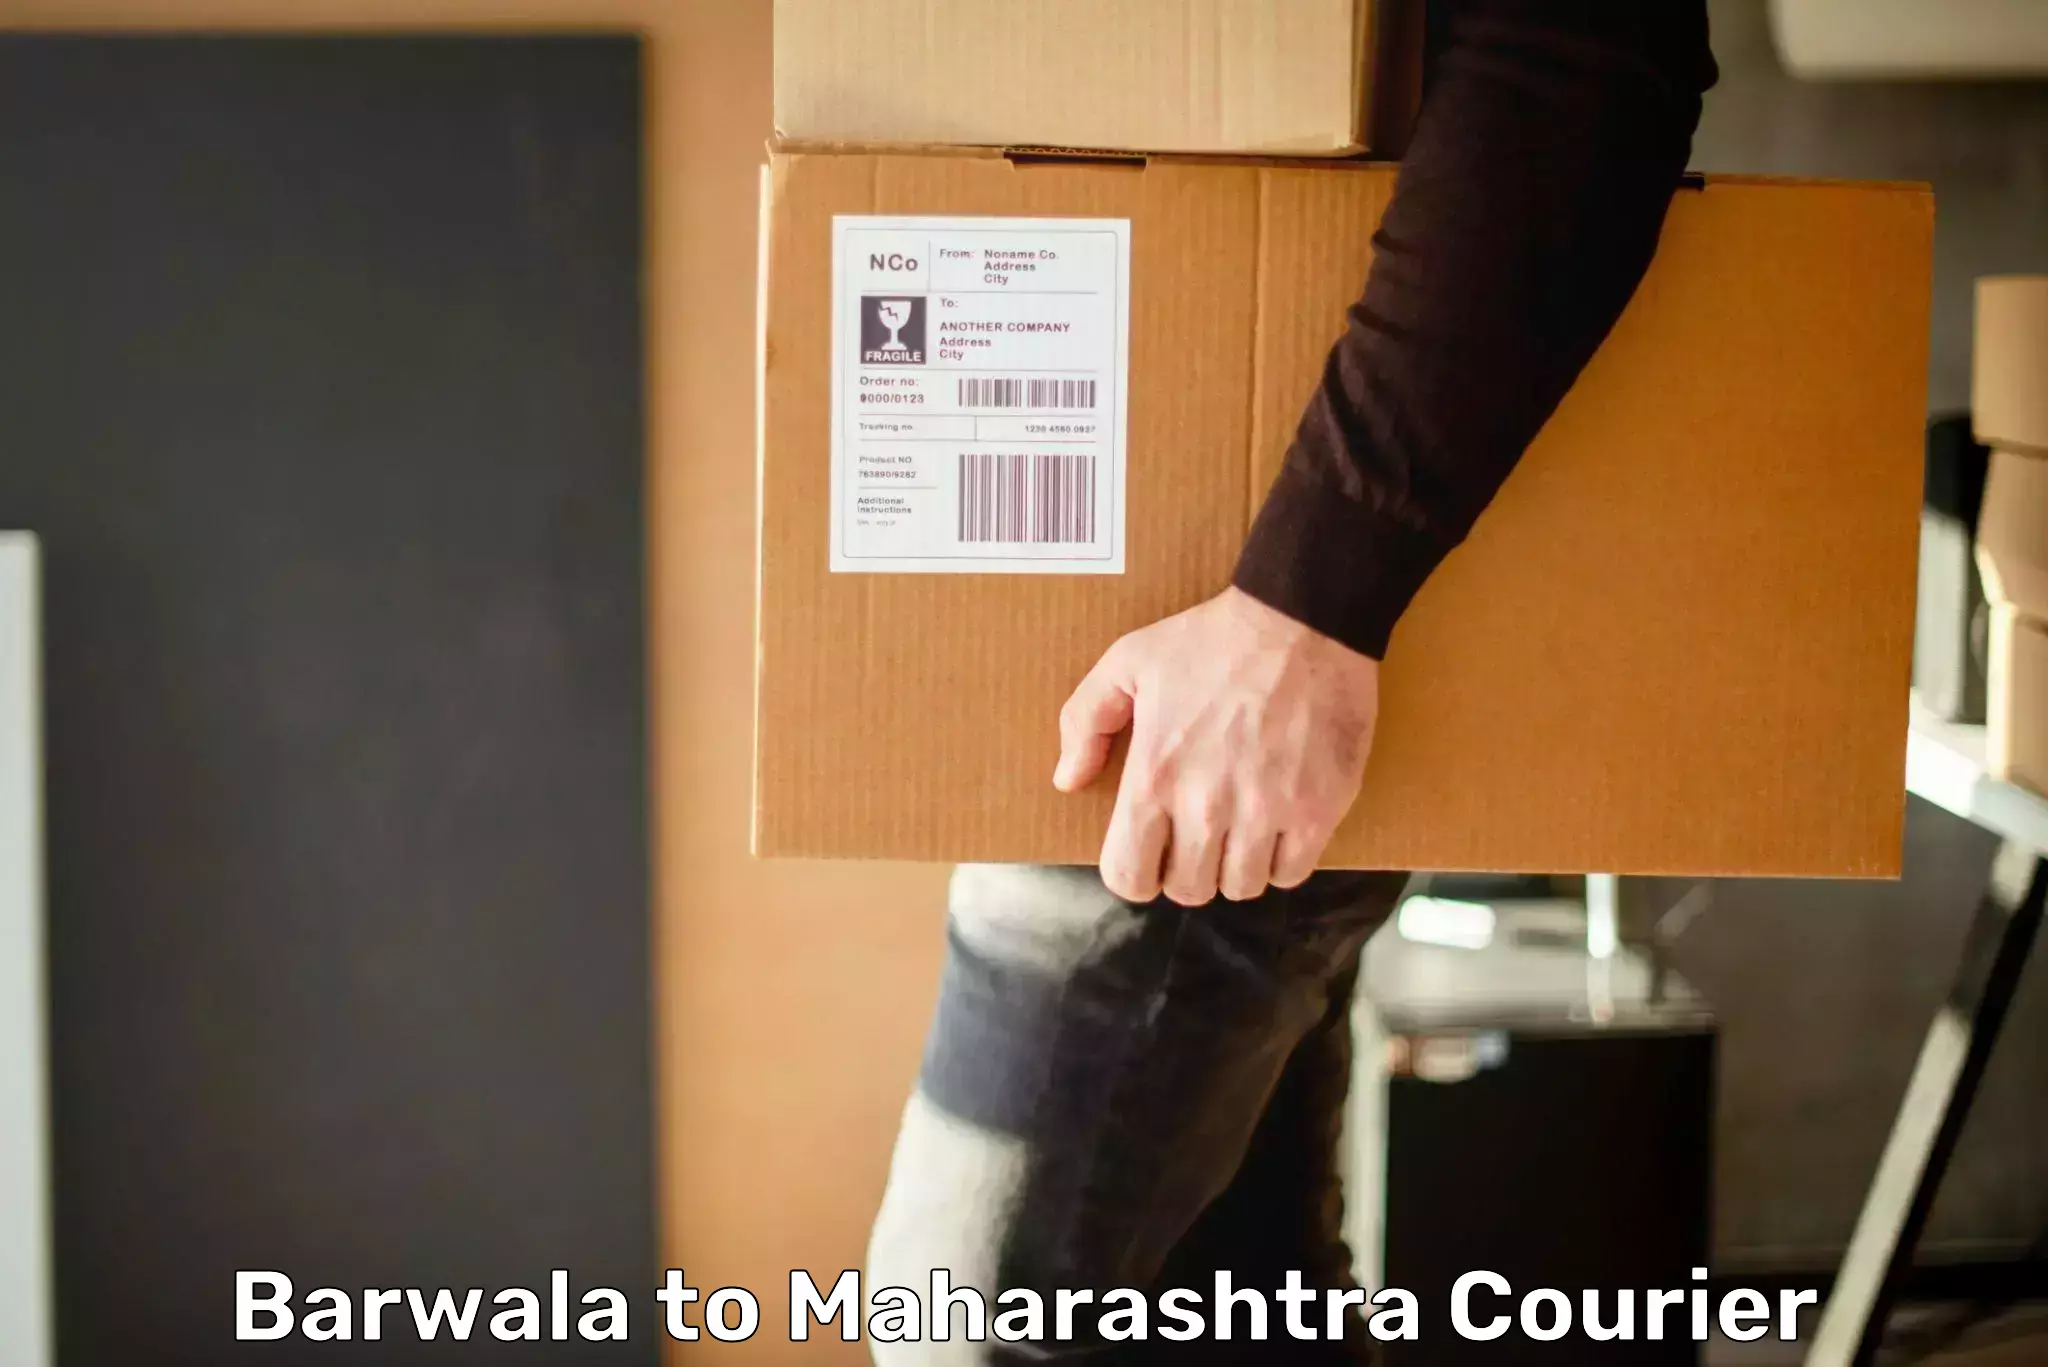 Express logistics Barwala to Maharashtra